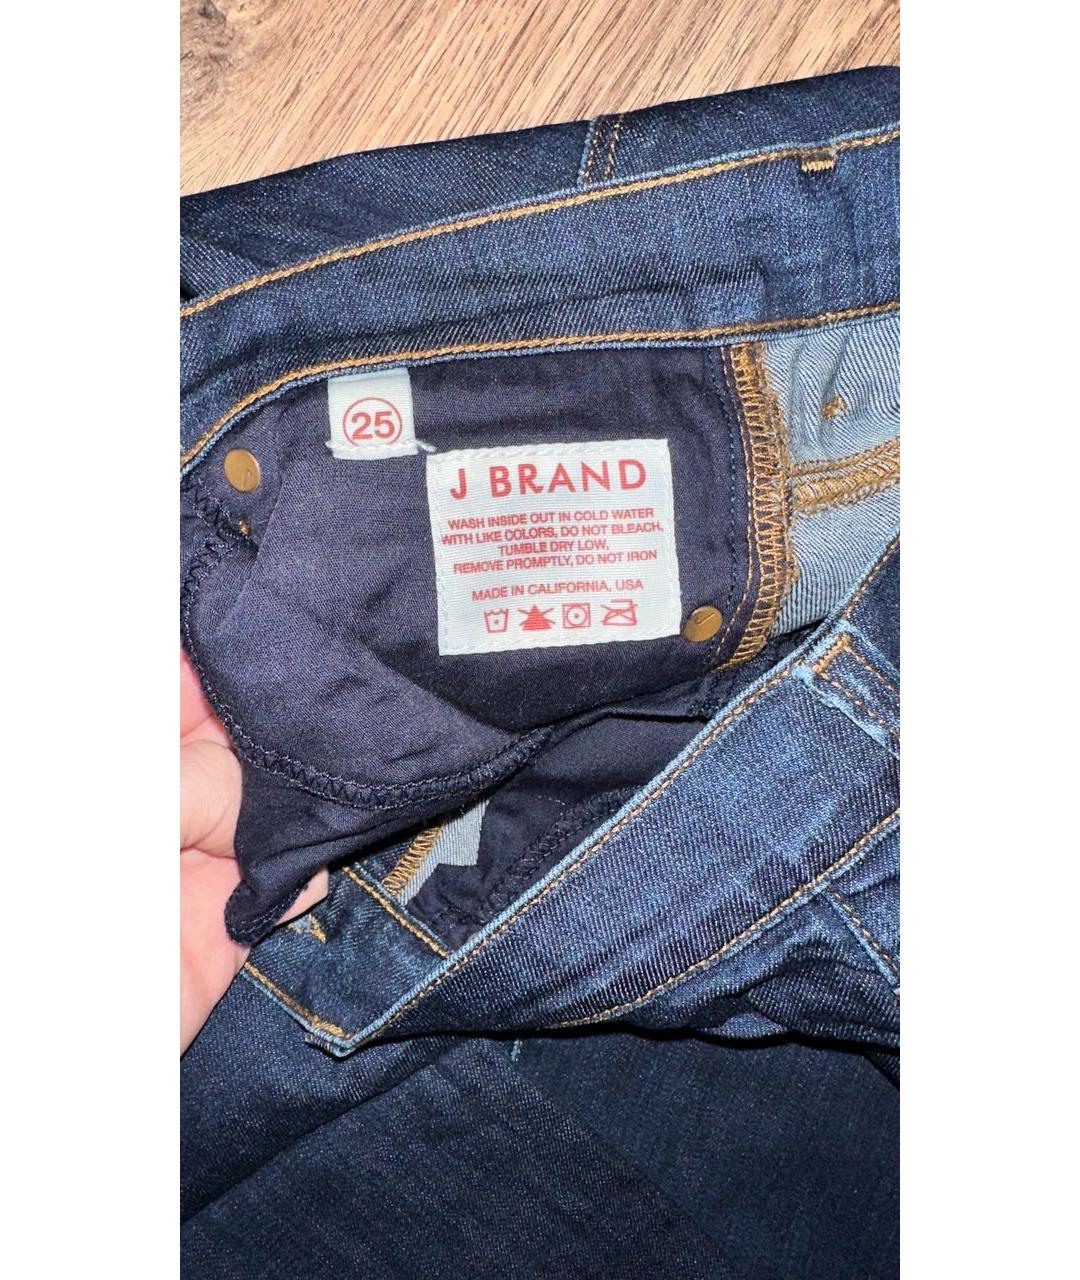 Прямые джинсы JBRAND для женщин купить за 8500 руб, арт. 907986 –Интернет-магазин Oskelly